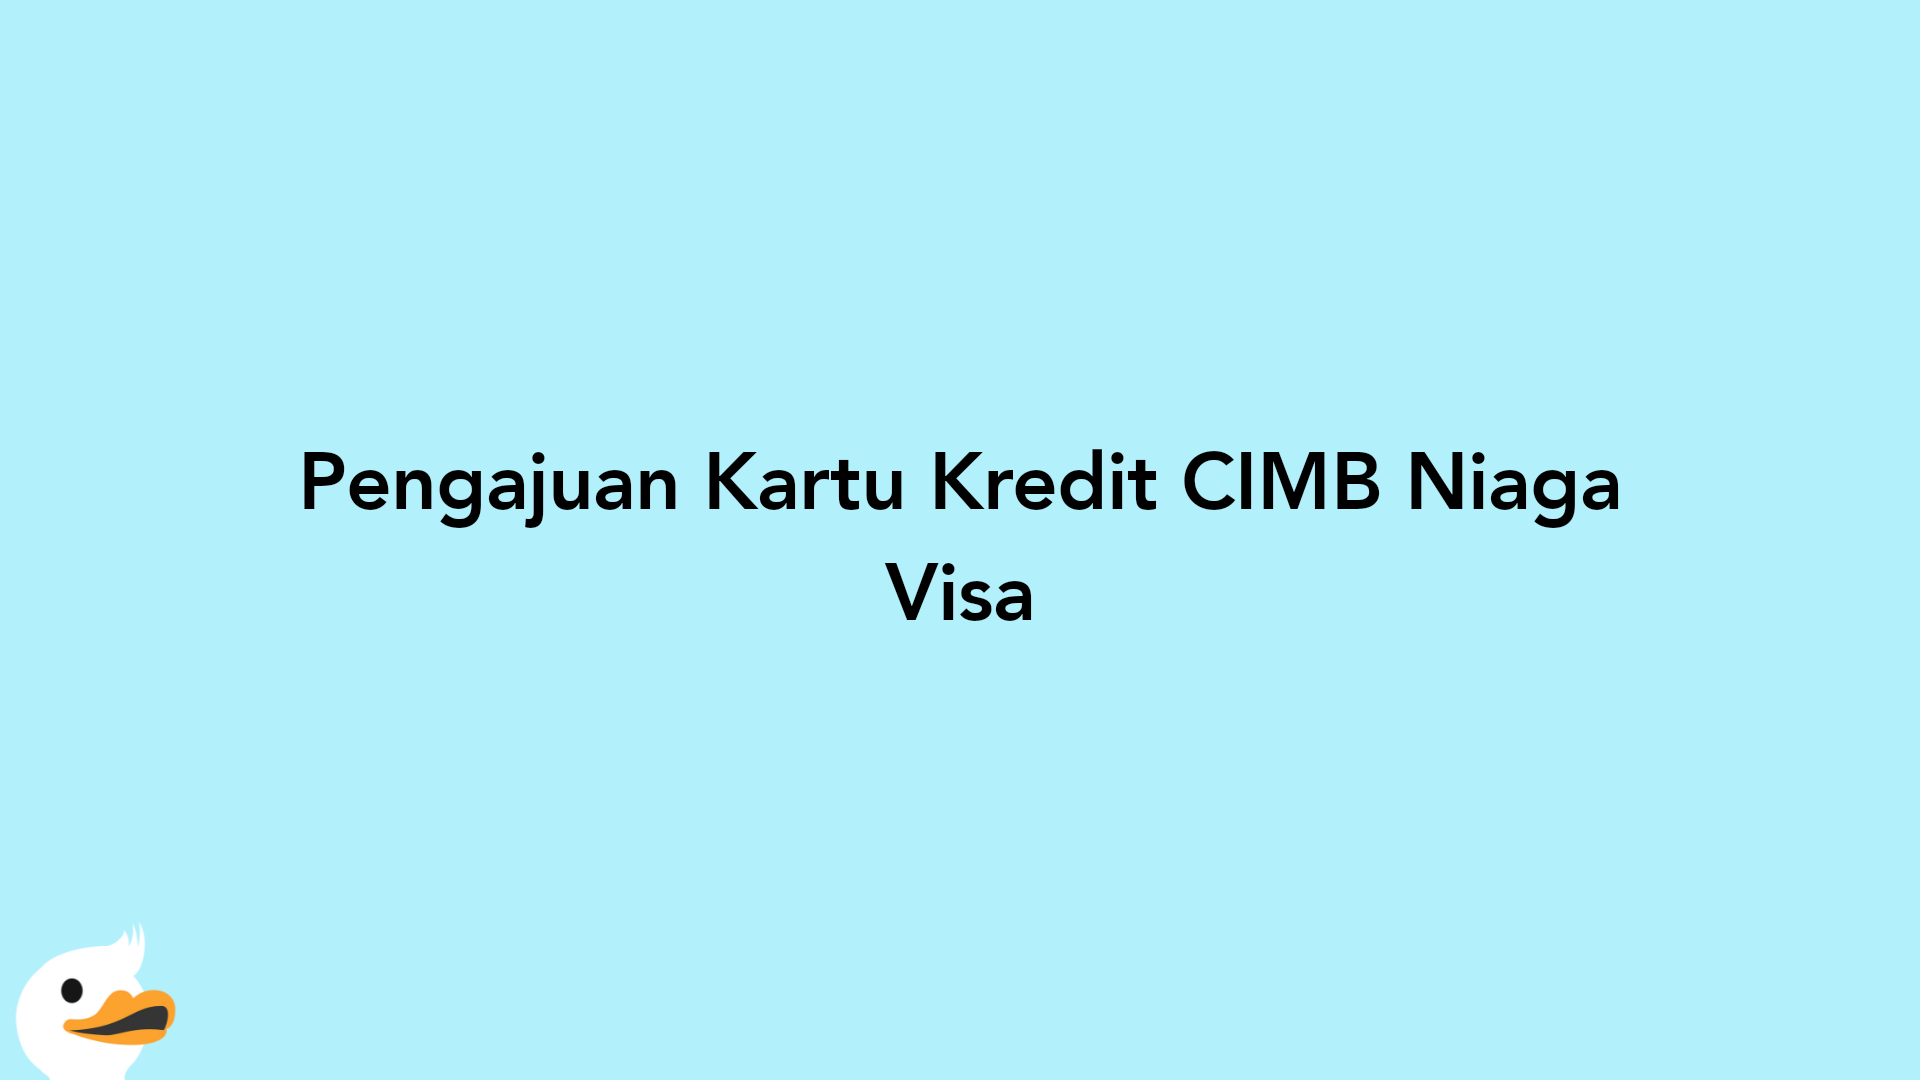 Pengajuan Kartu Kredit CIMB Niaga Visa